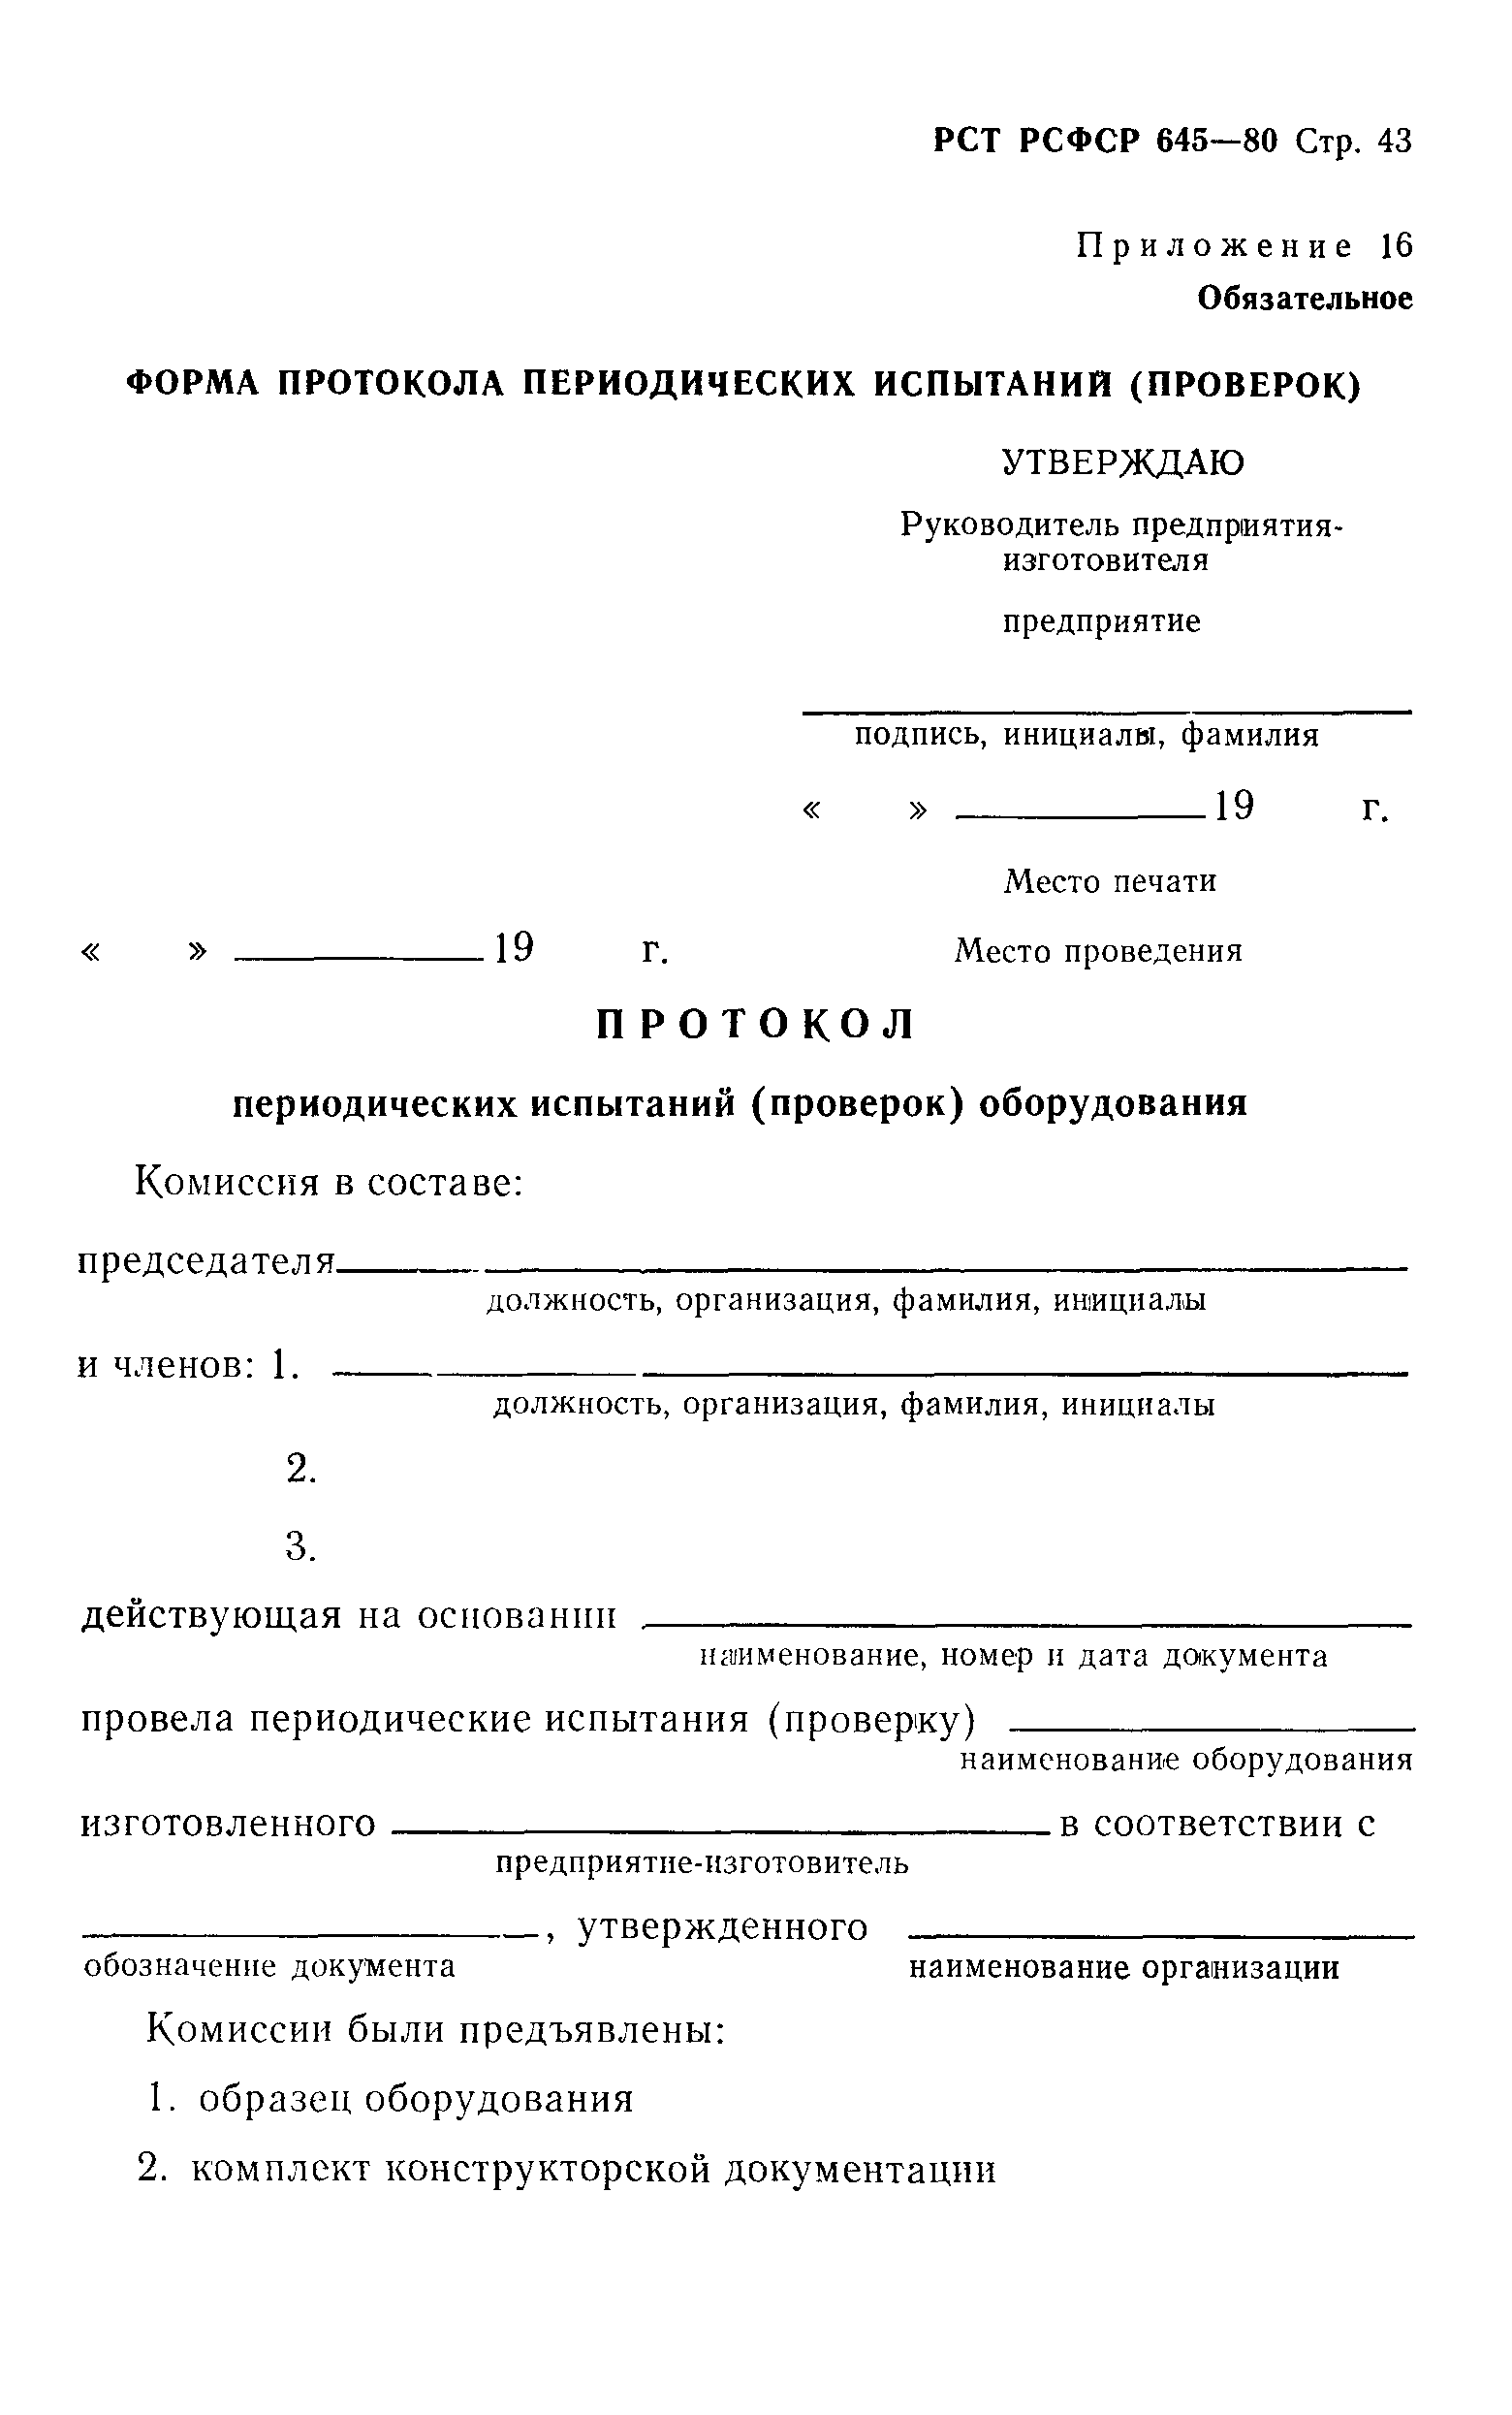 РСТ РСФСР 645-80